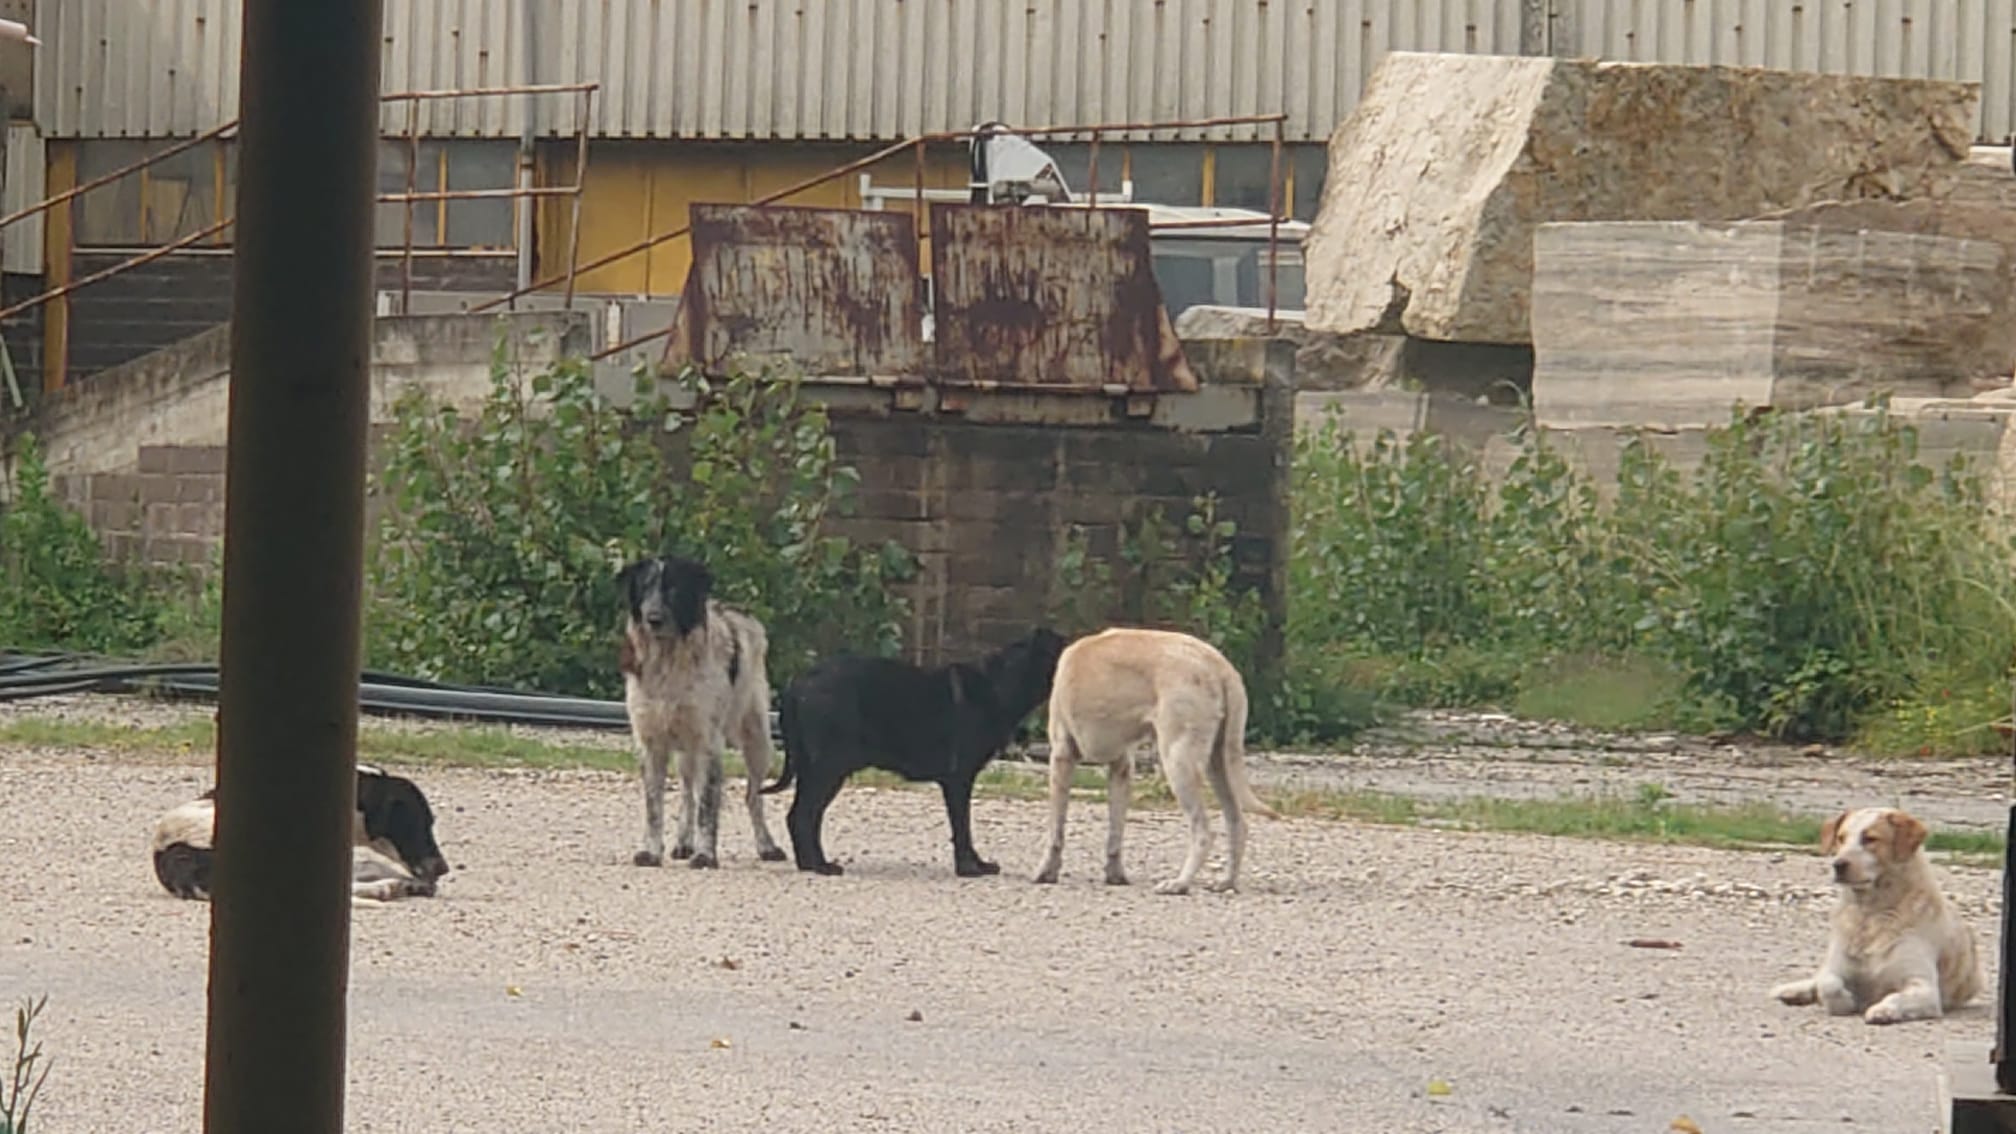 “Spariti in un mese 70 cani delle cave di Tivoli”: gli animalisti presentano denuncia 1